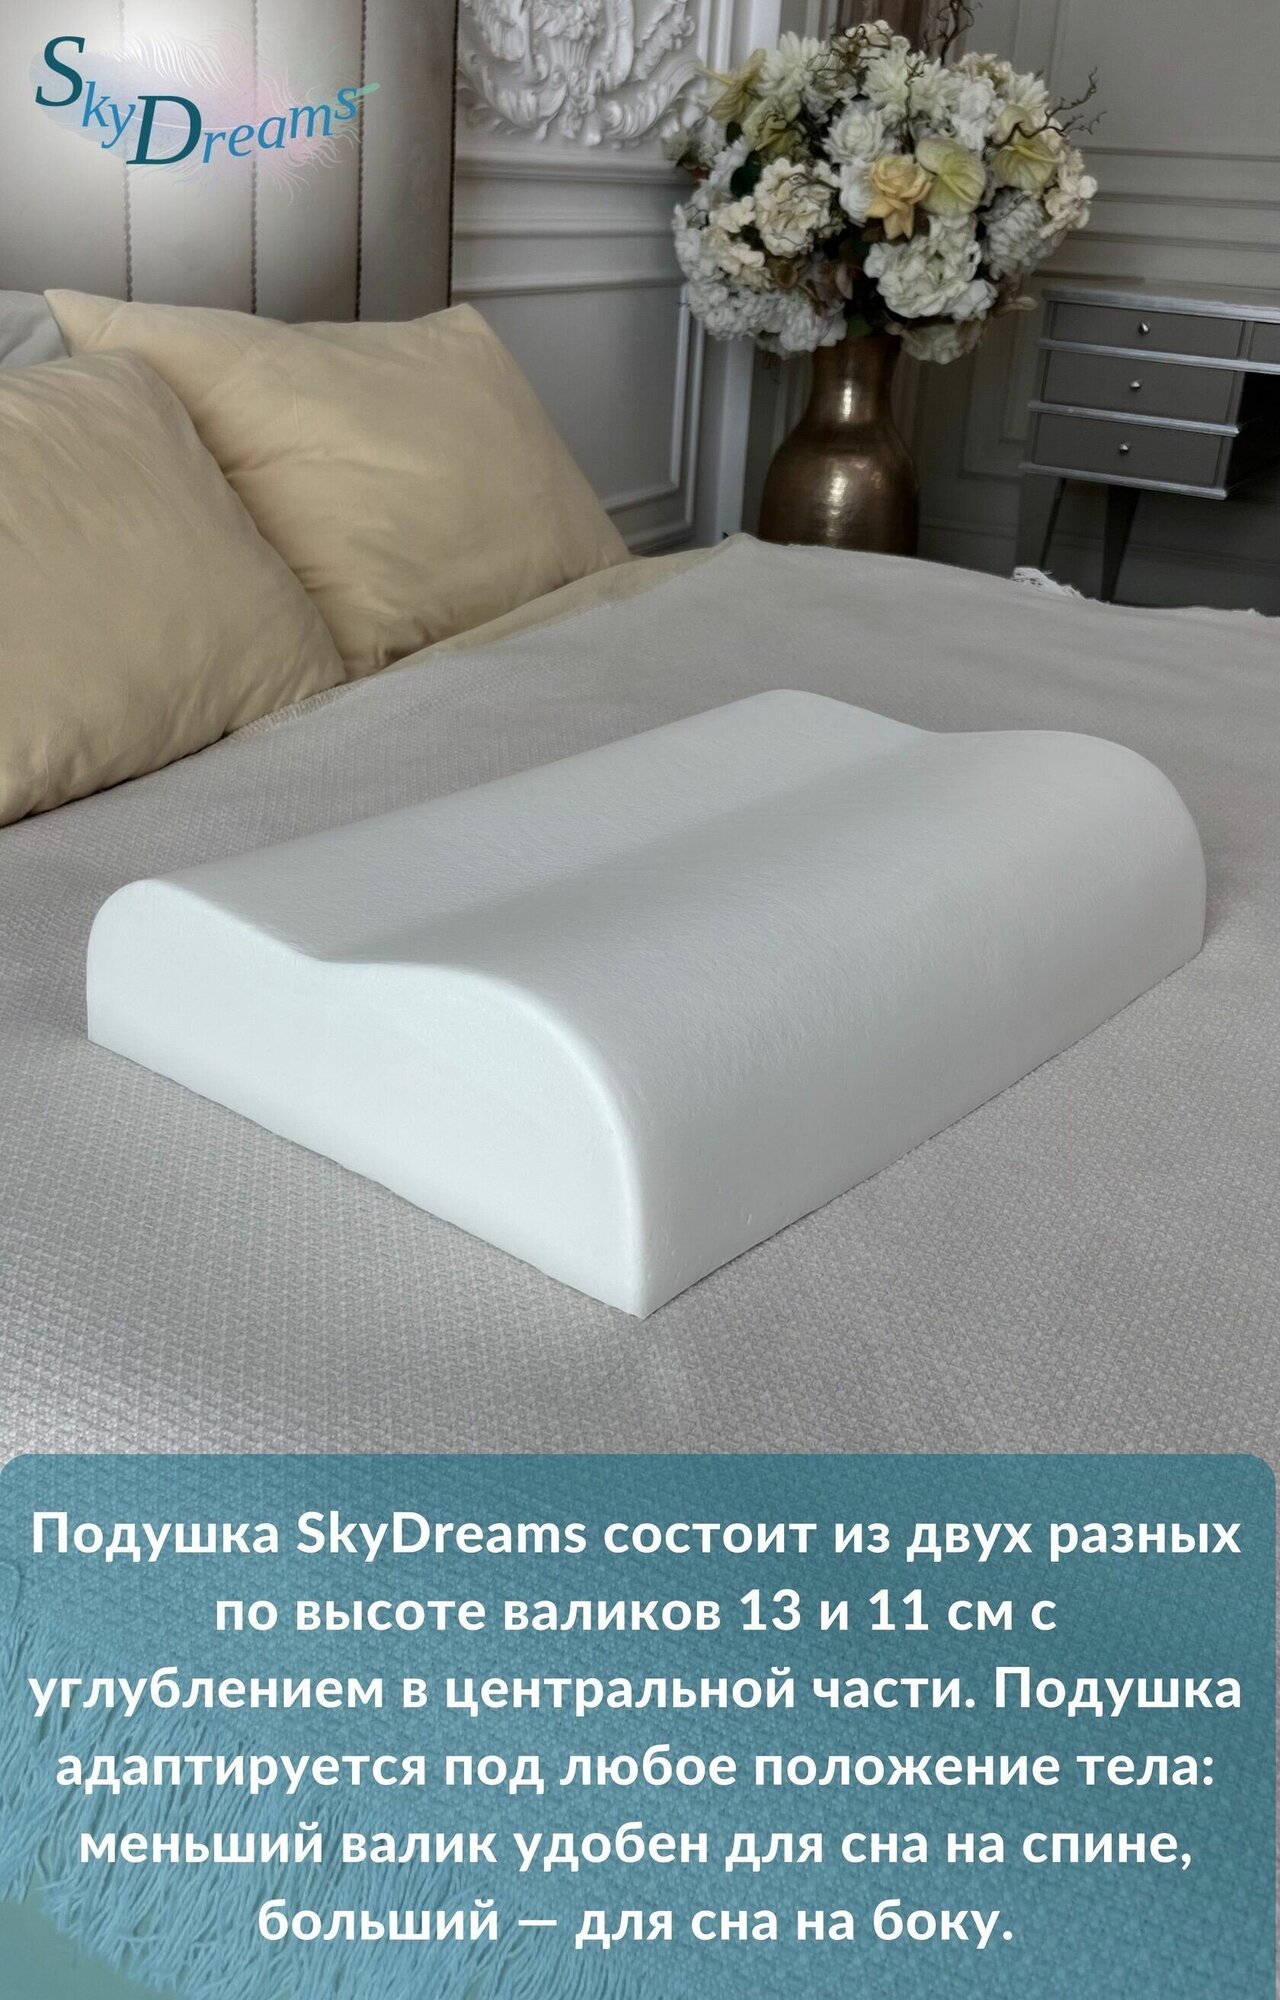 Анатомическая подушка "SkyDreams" WAVE, с эффектом памяти, двумя валиками 60х40х13/11 см - фотография № 9